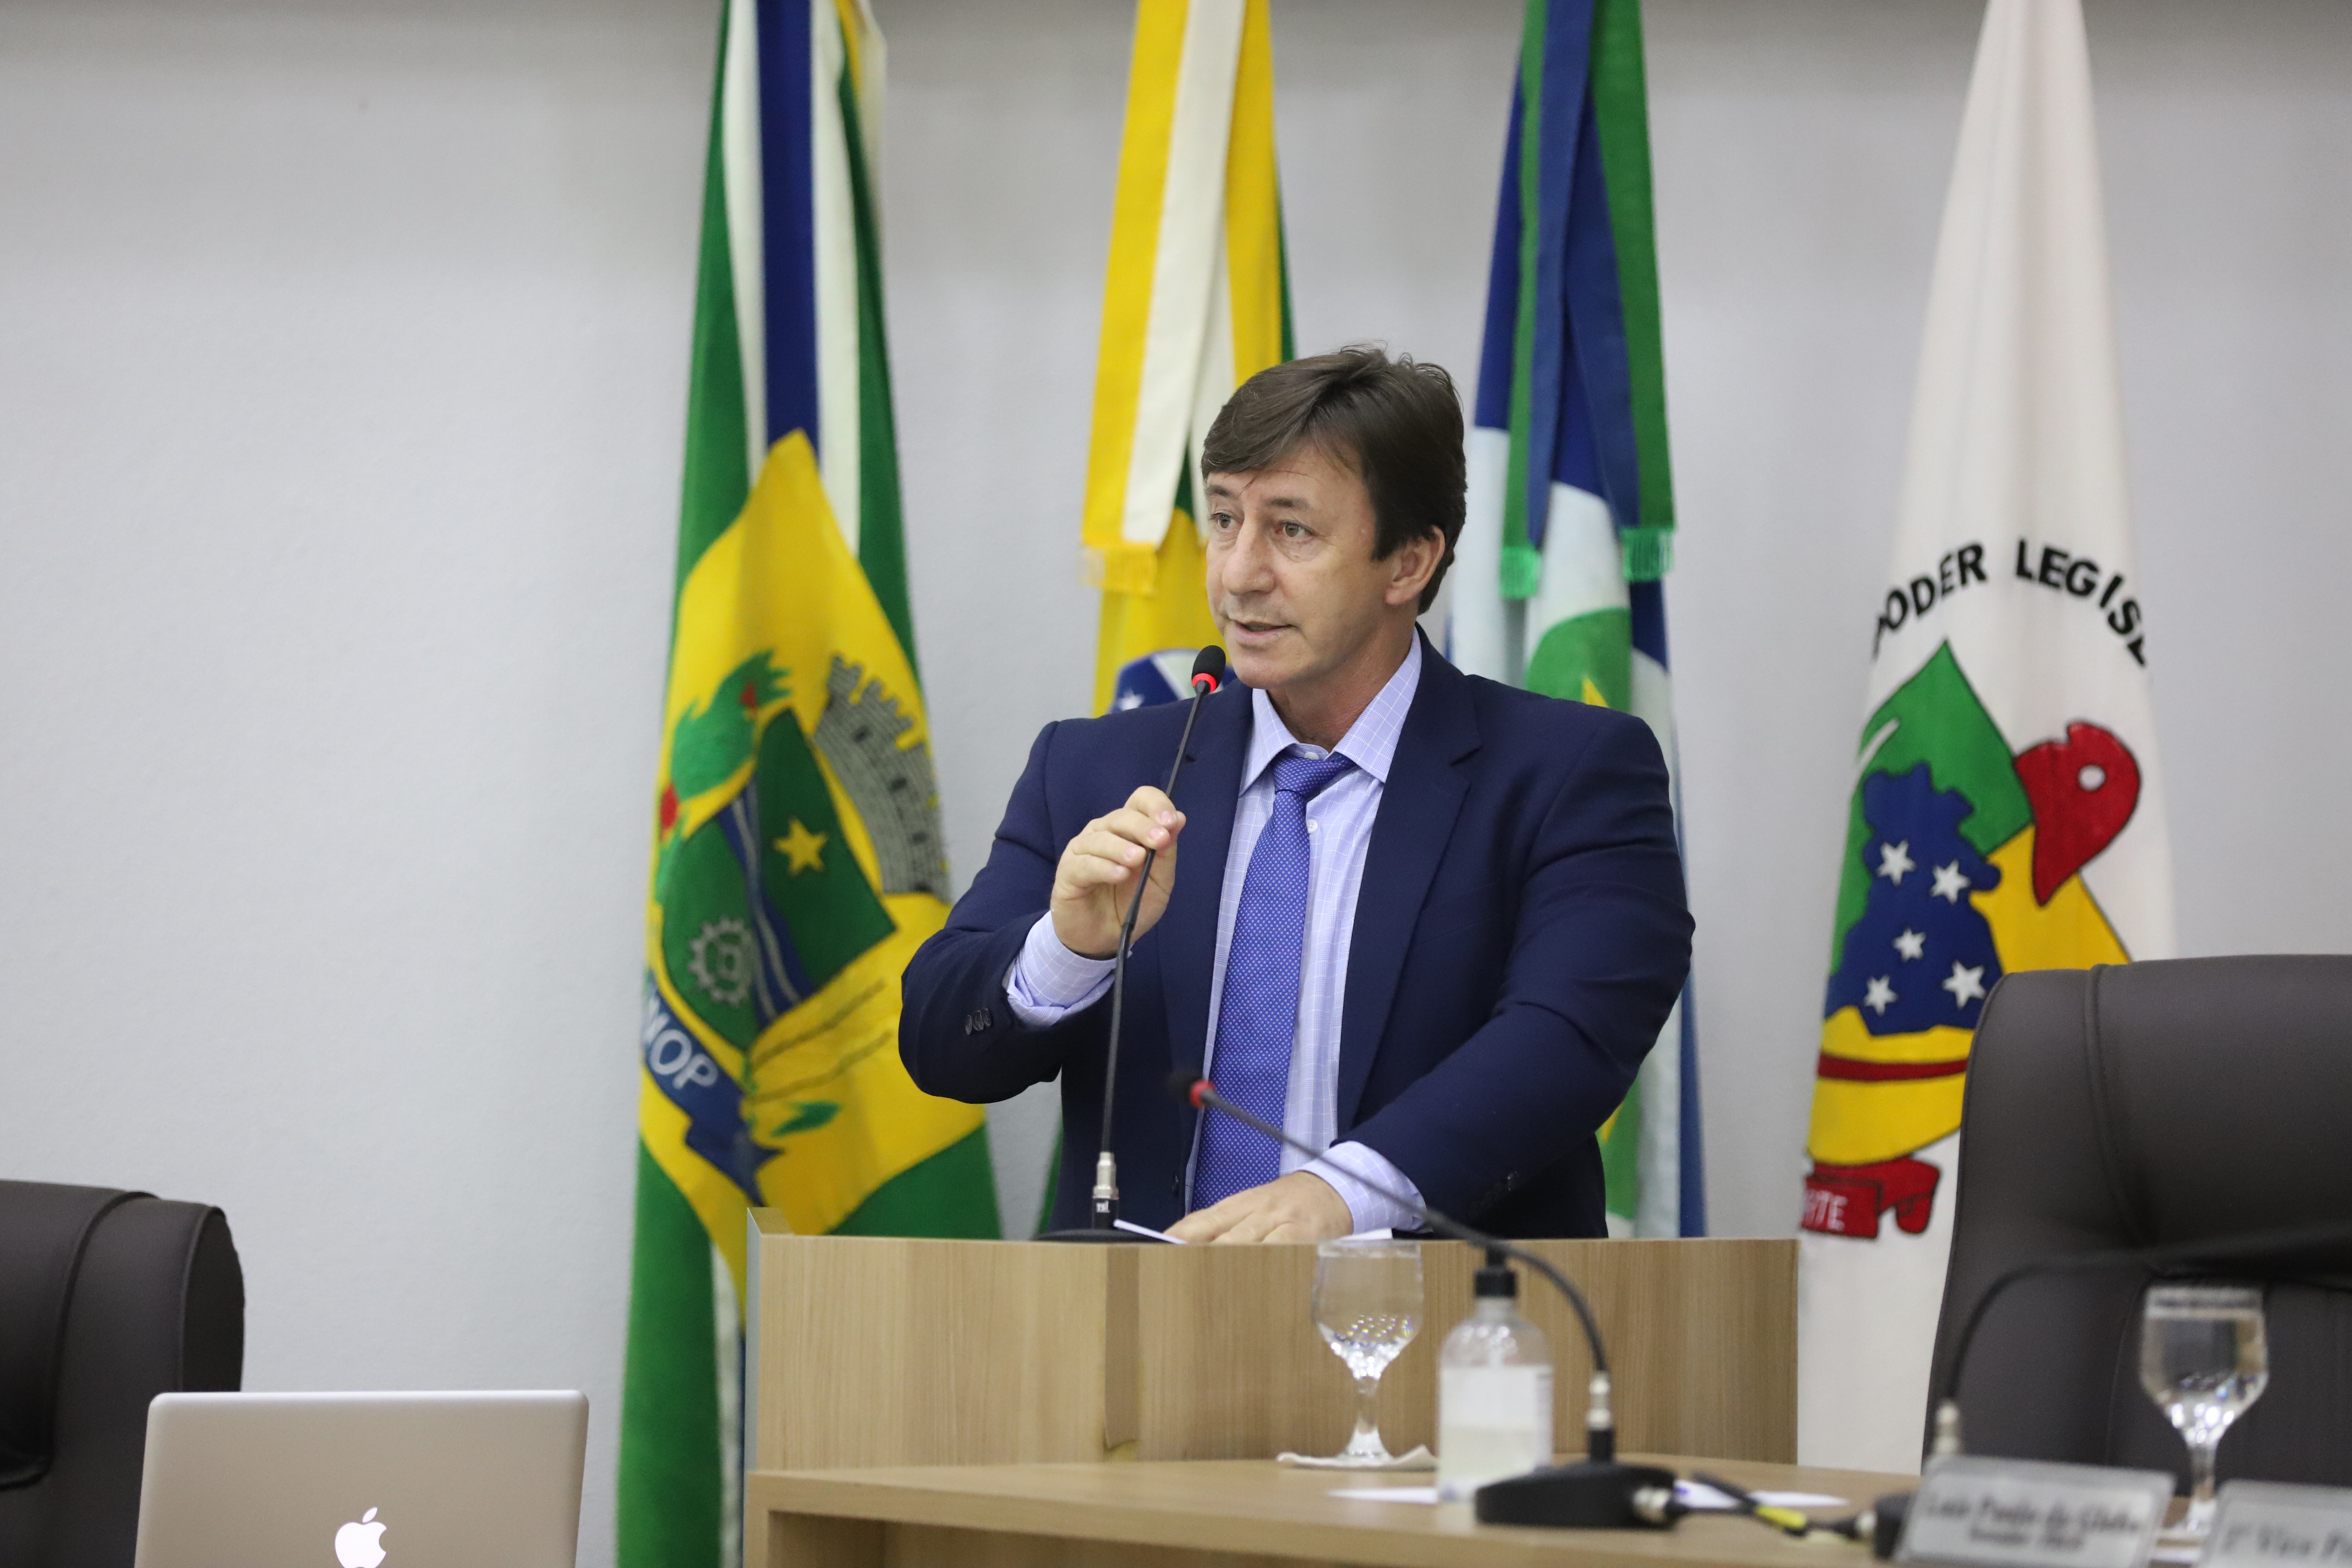 Debortoli cobra regularização fundiária do Belo Ramo